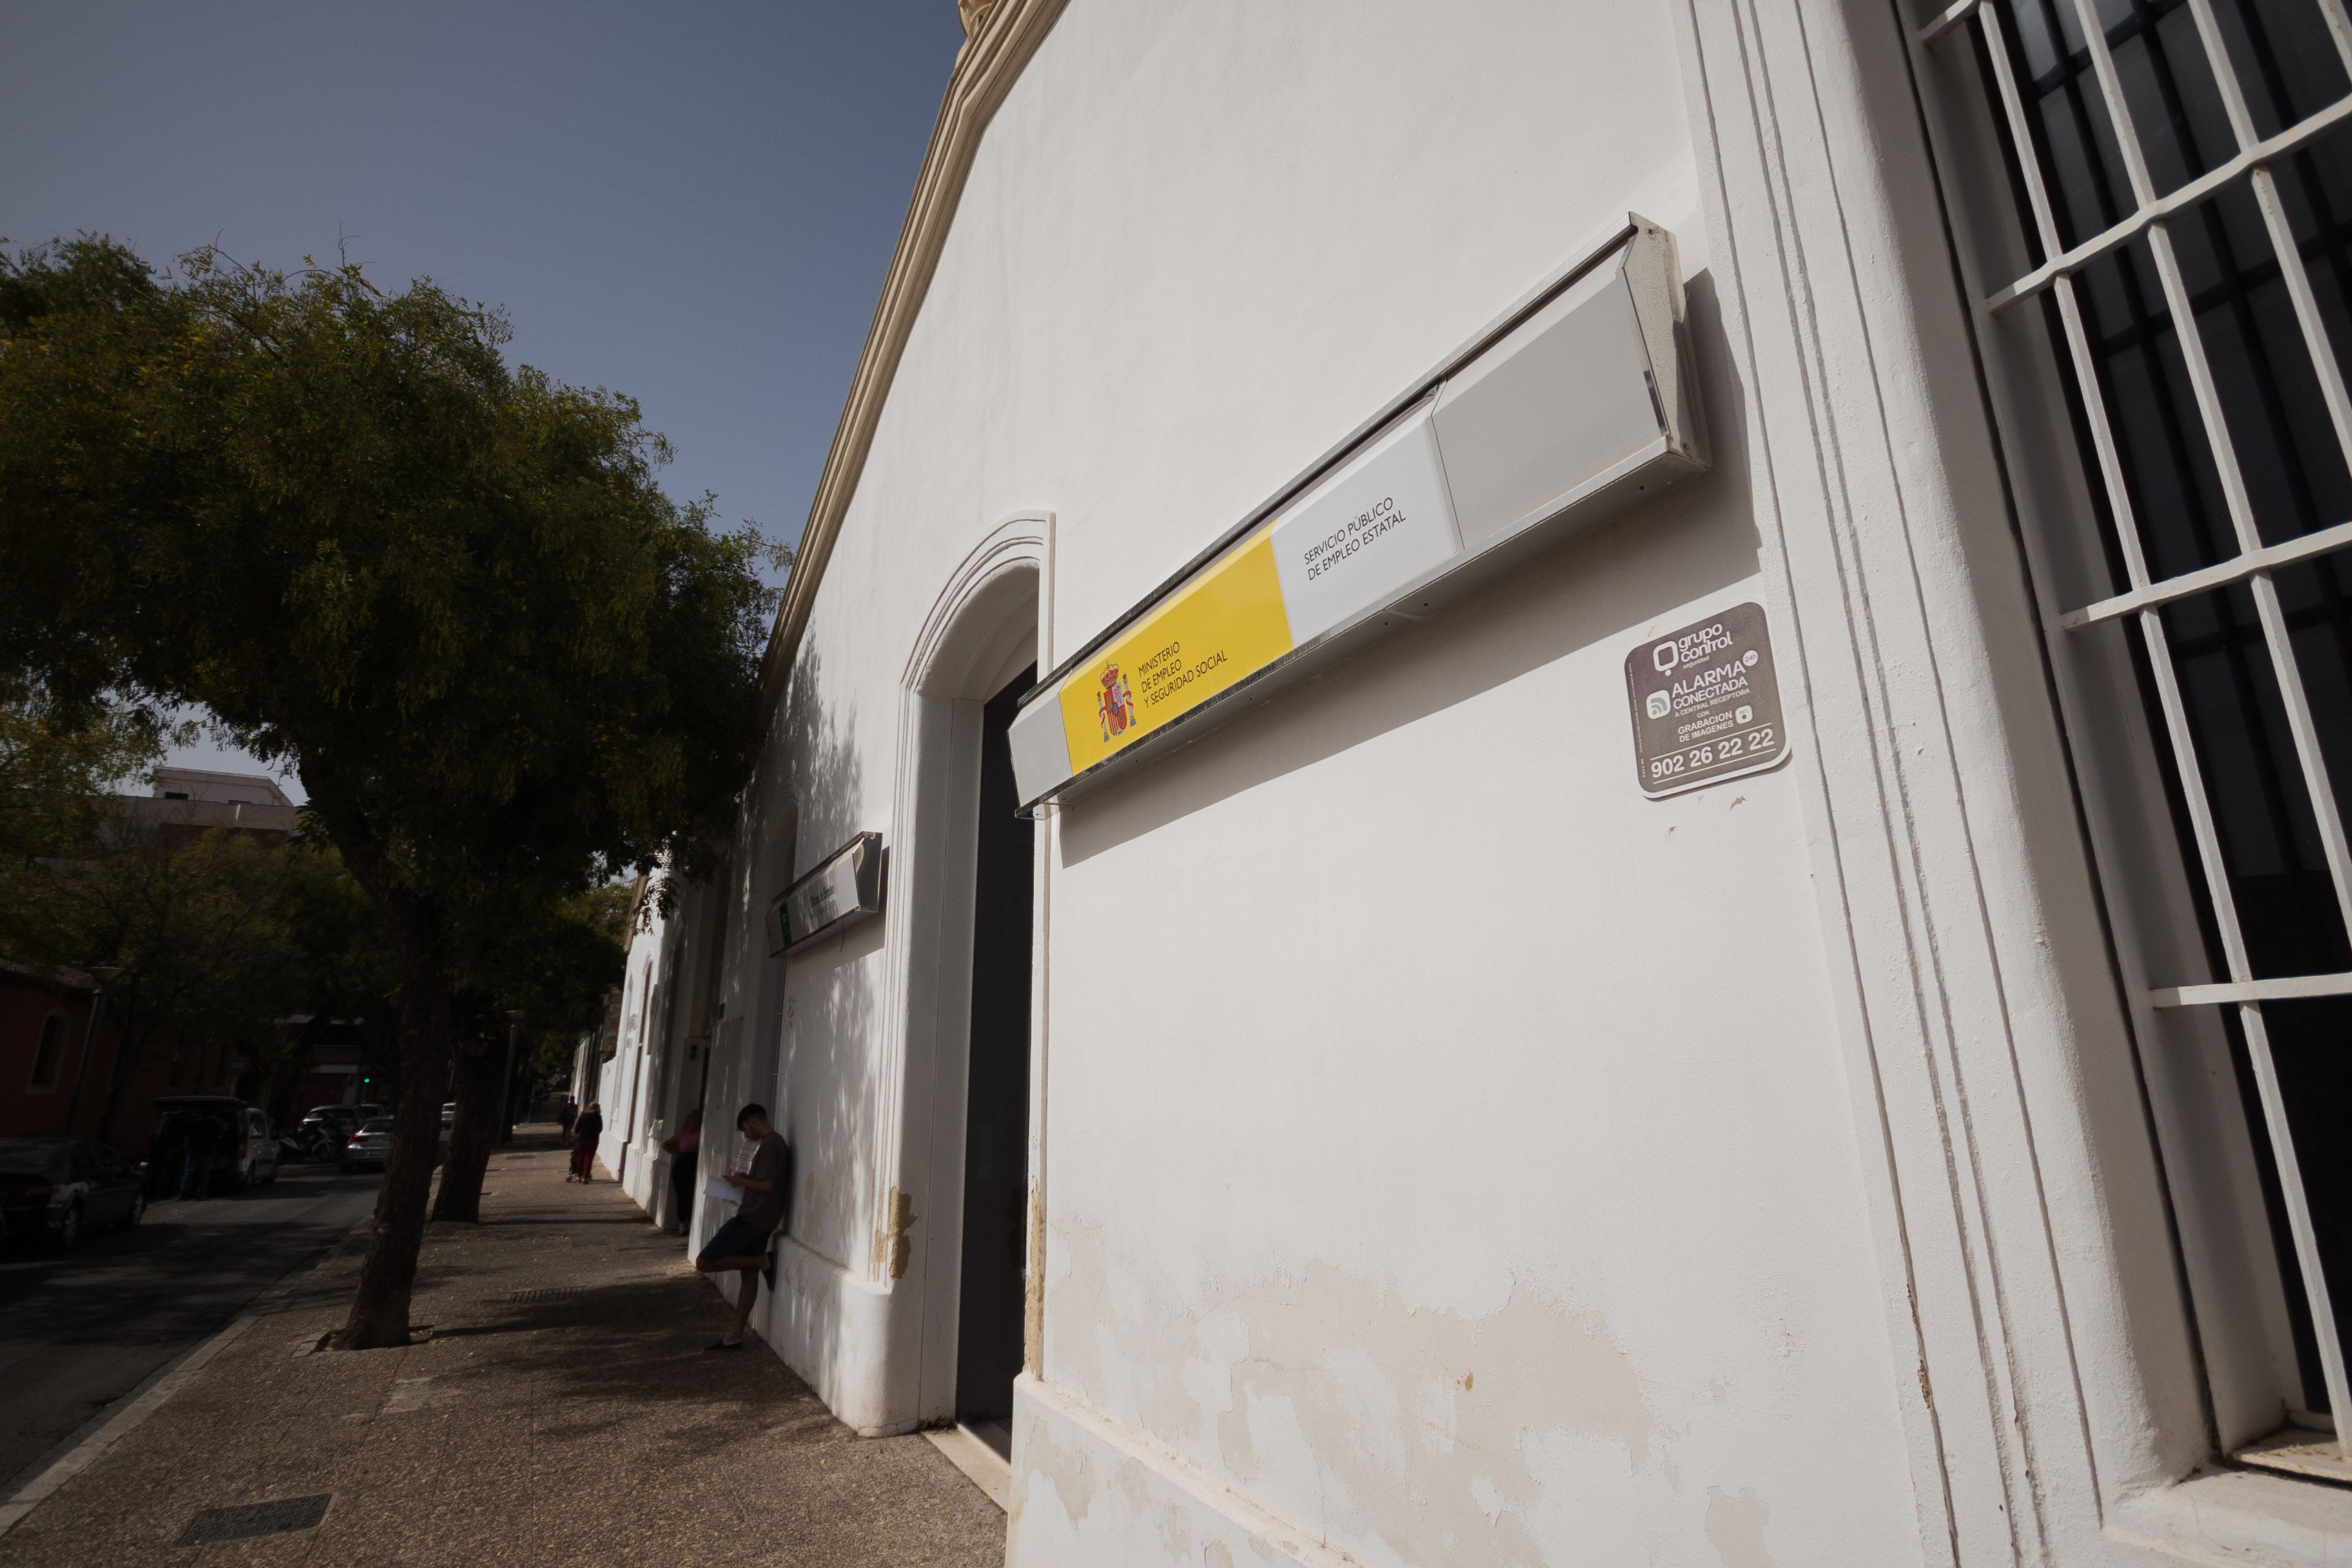 Oficina de empleo en Jerez, a la que acuden trabajadores en busca de una oportunidad laboral.